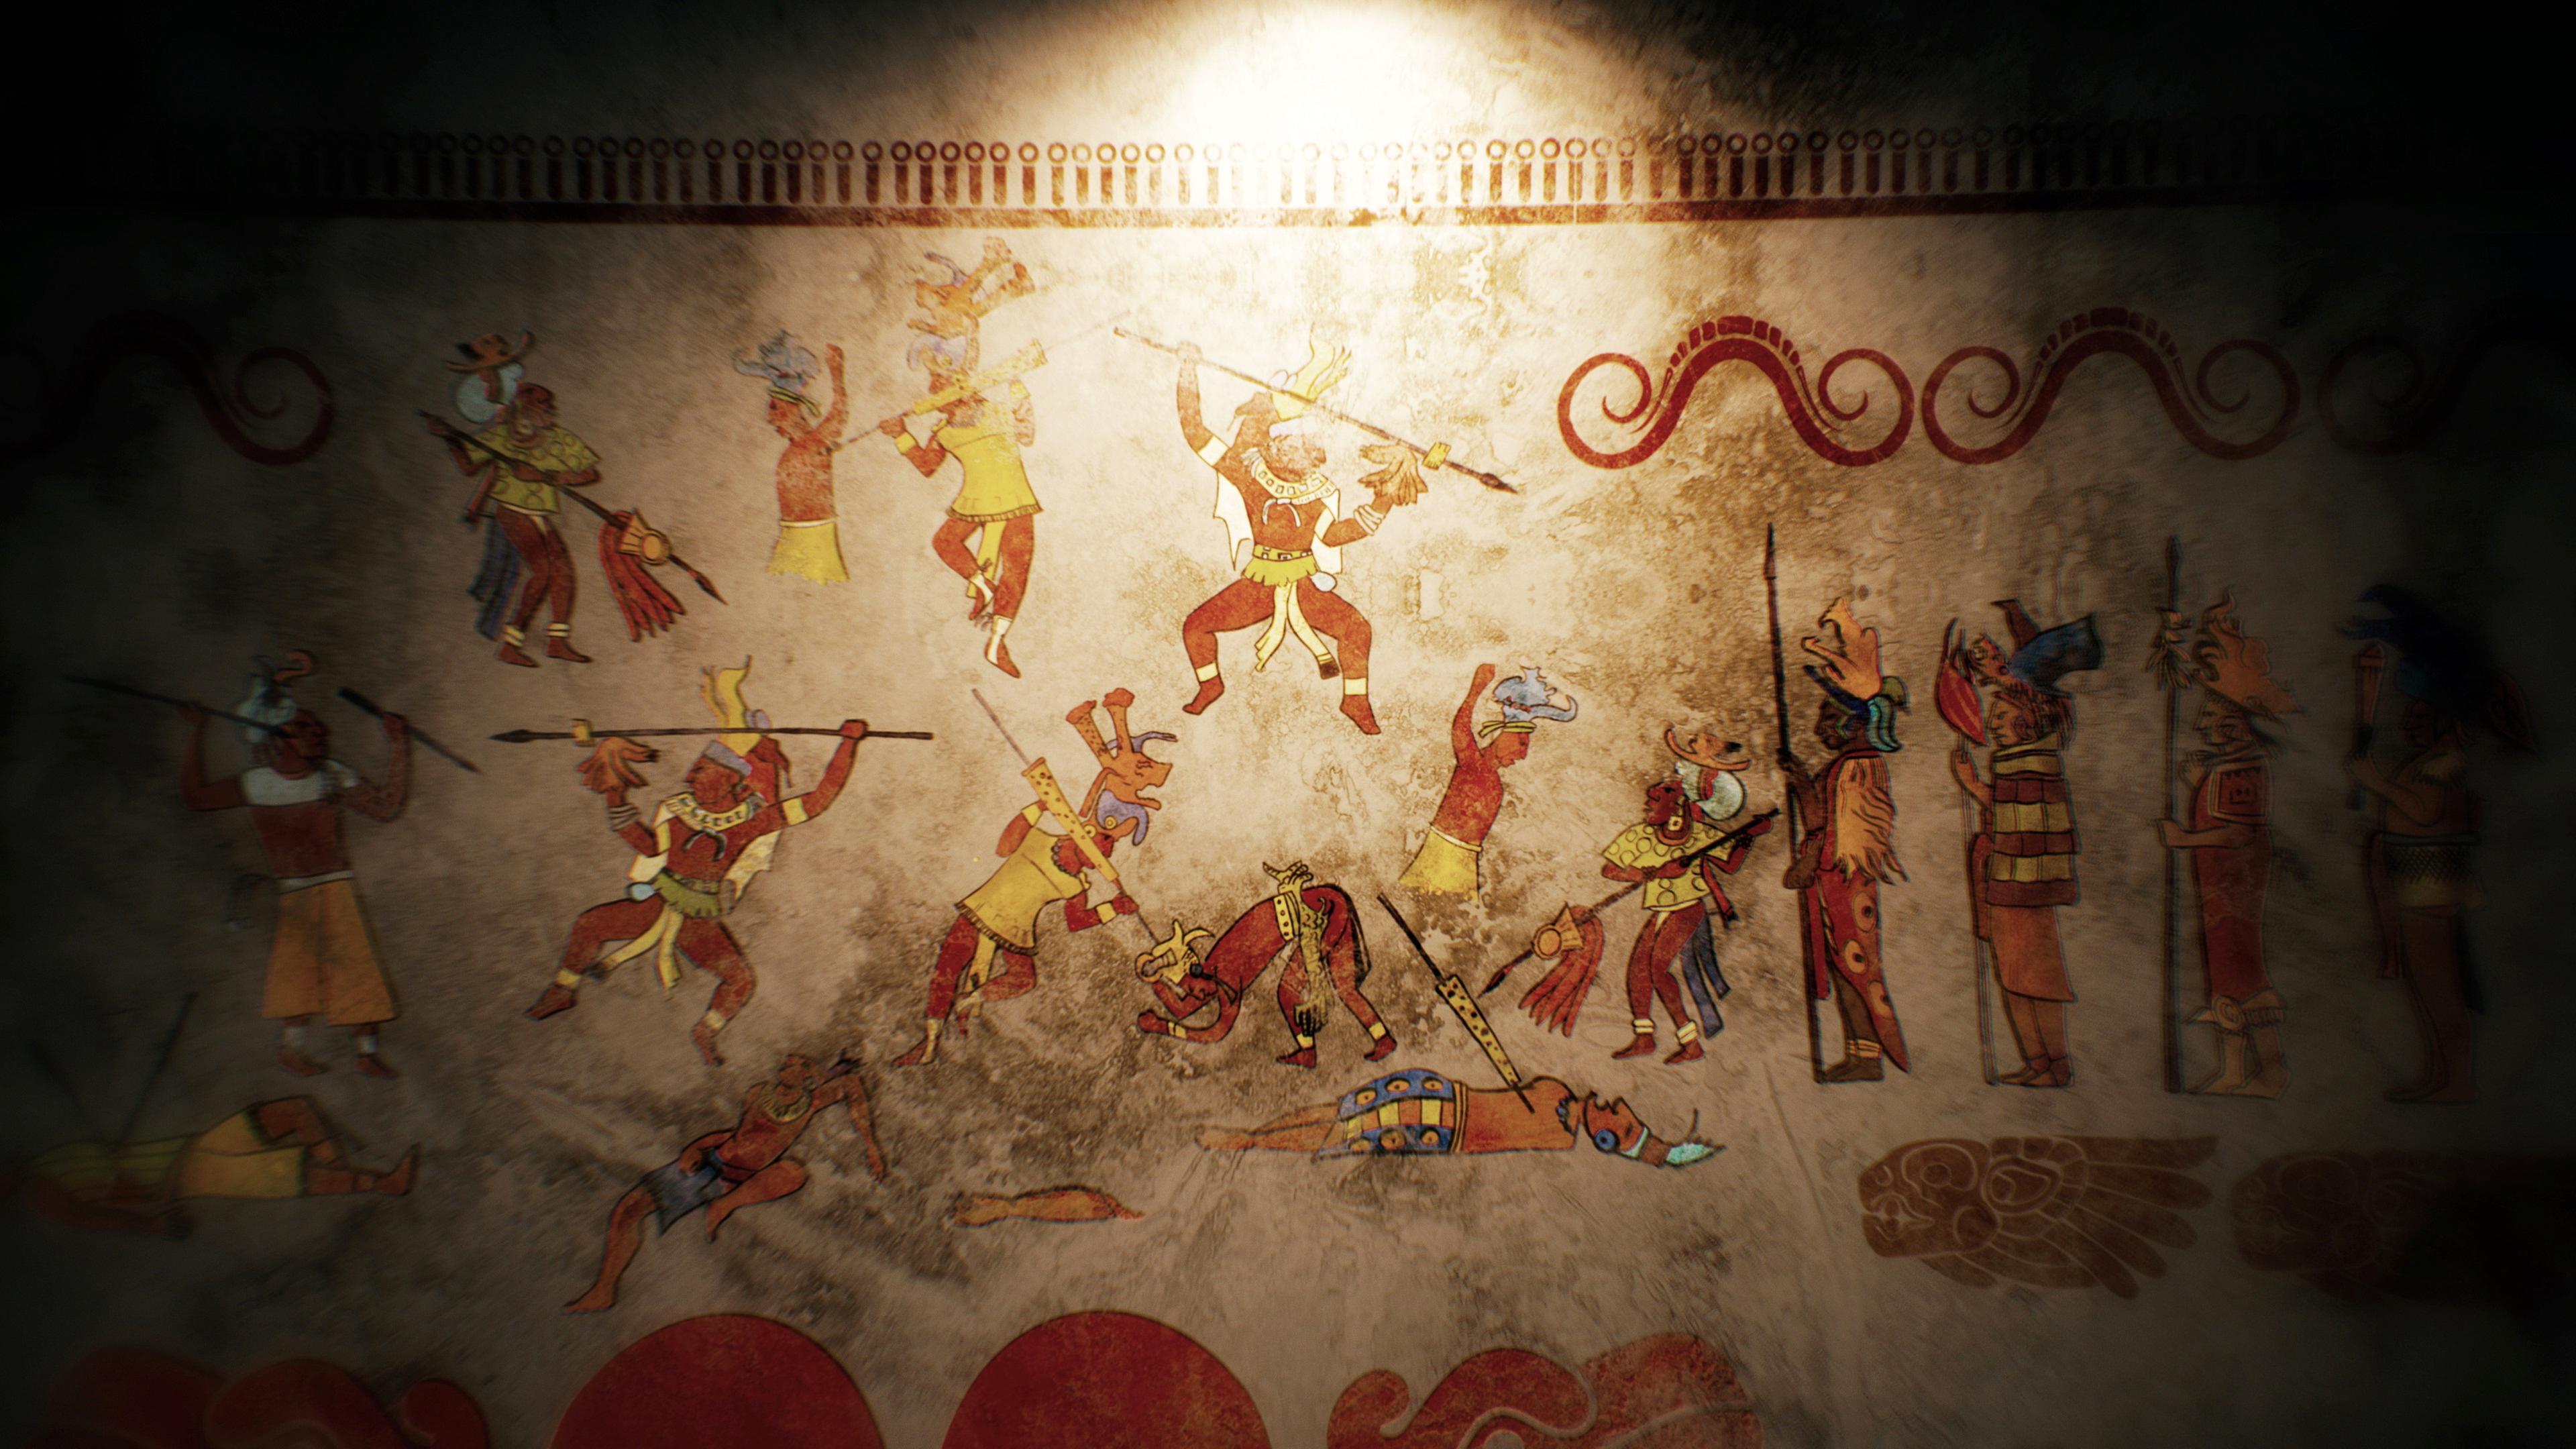 Wandgemälde: Zeichnerische Darstellung von mehreren kämpfenden Figuren mit Speeren, von denen einige bereits verletzt am Boden liegen.